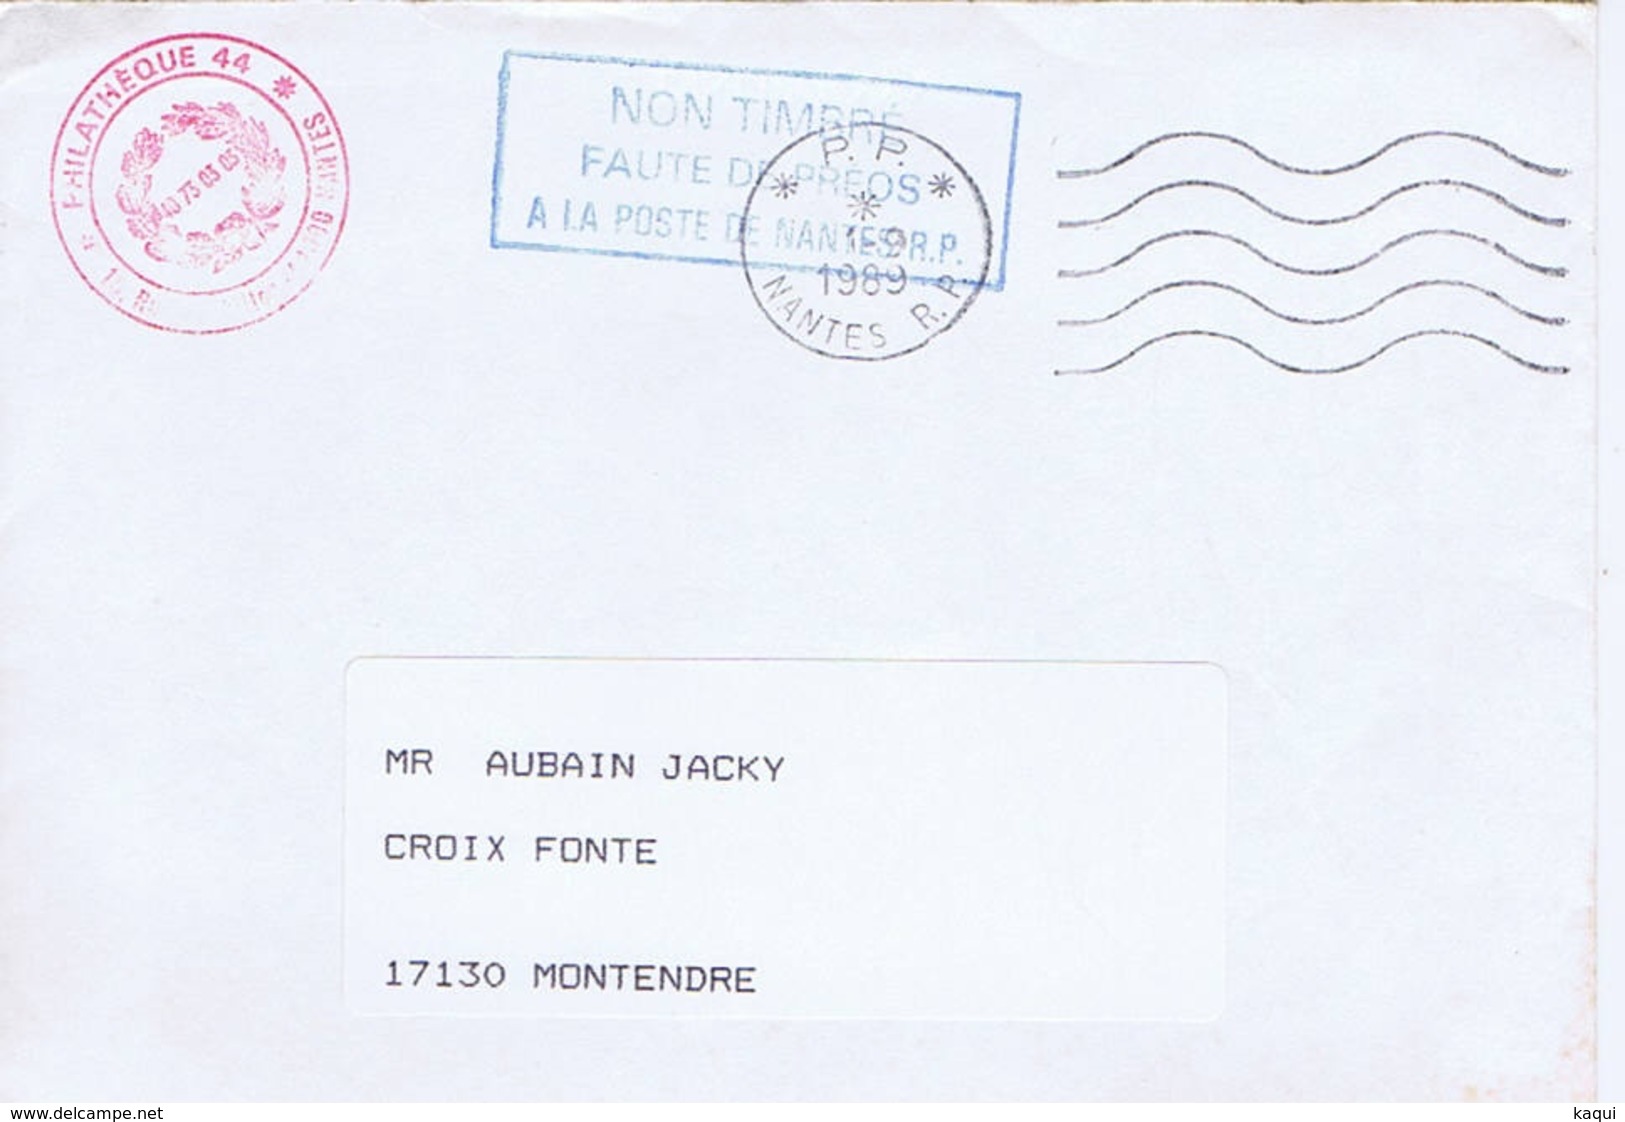 LOIRE-ATLANTIQUE - Port Payé NANTES R. P. De 1989 + Cachet Non Timbré Faute De Préos à La Poste De Nantes - Oblitérations Mécaniques (flammes)